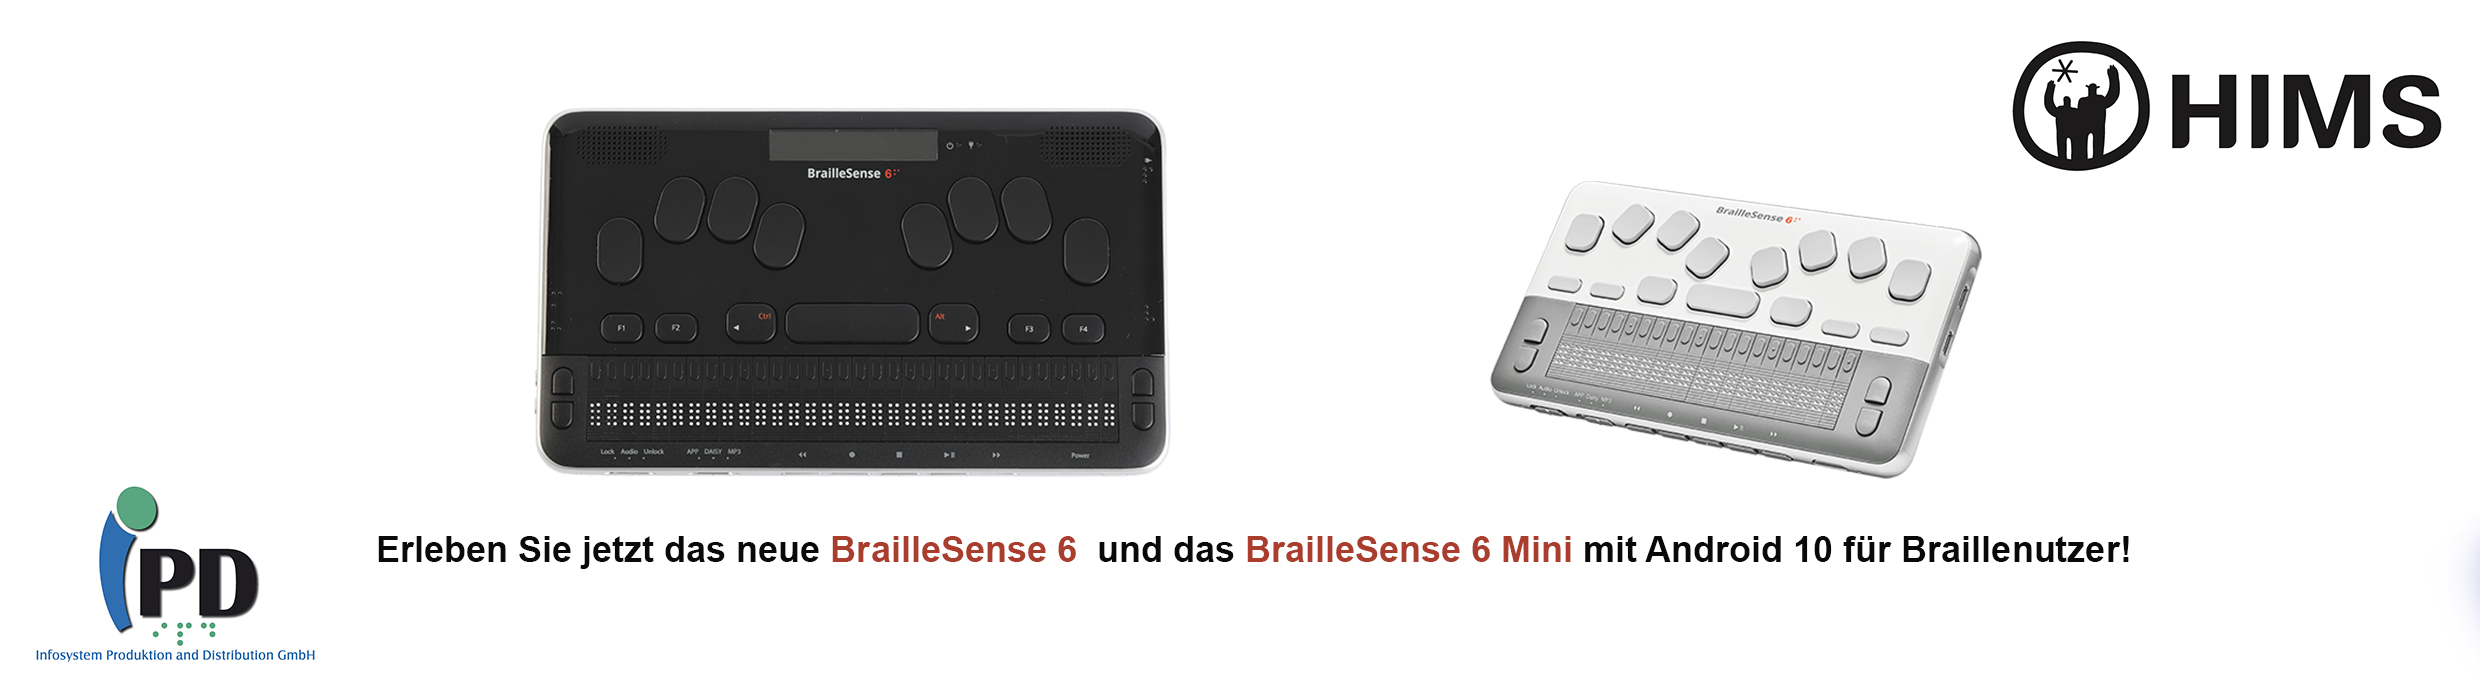 Erleben Sie jetzt das neue BrailleSense 6 und das BrailleSense 6 Mini mit Android 10 für Braillenutzer!